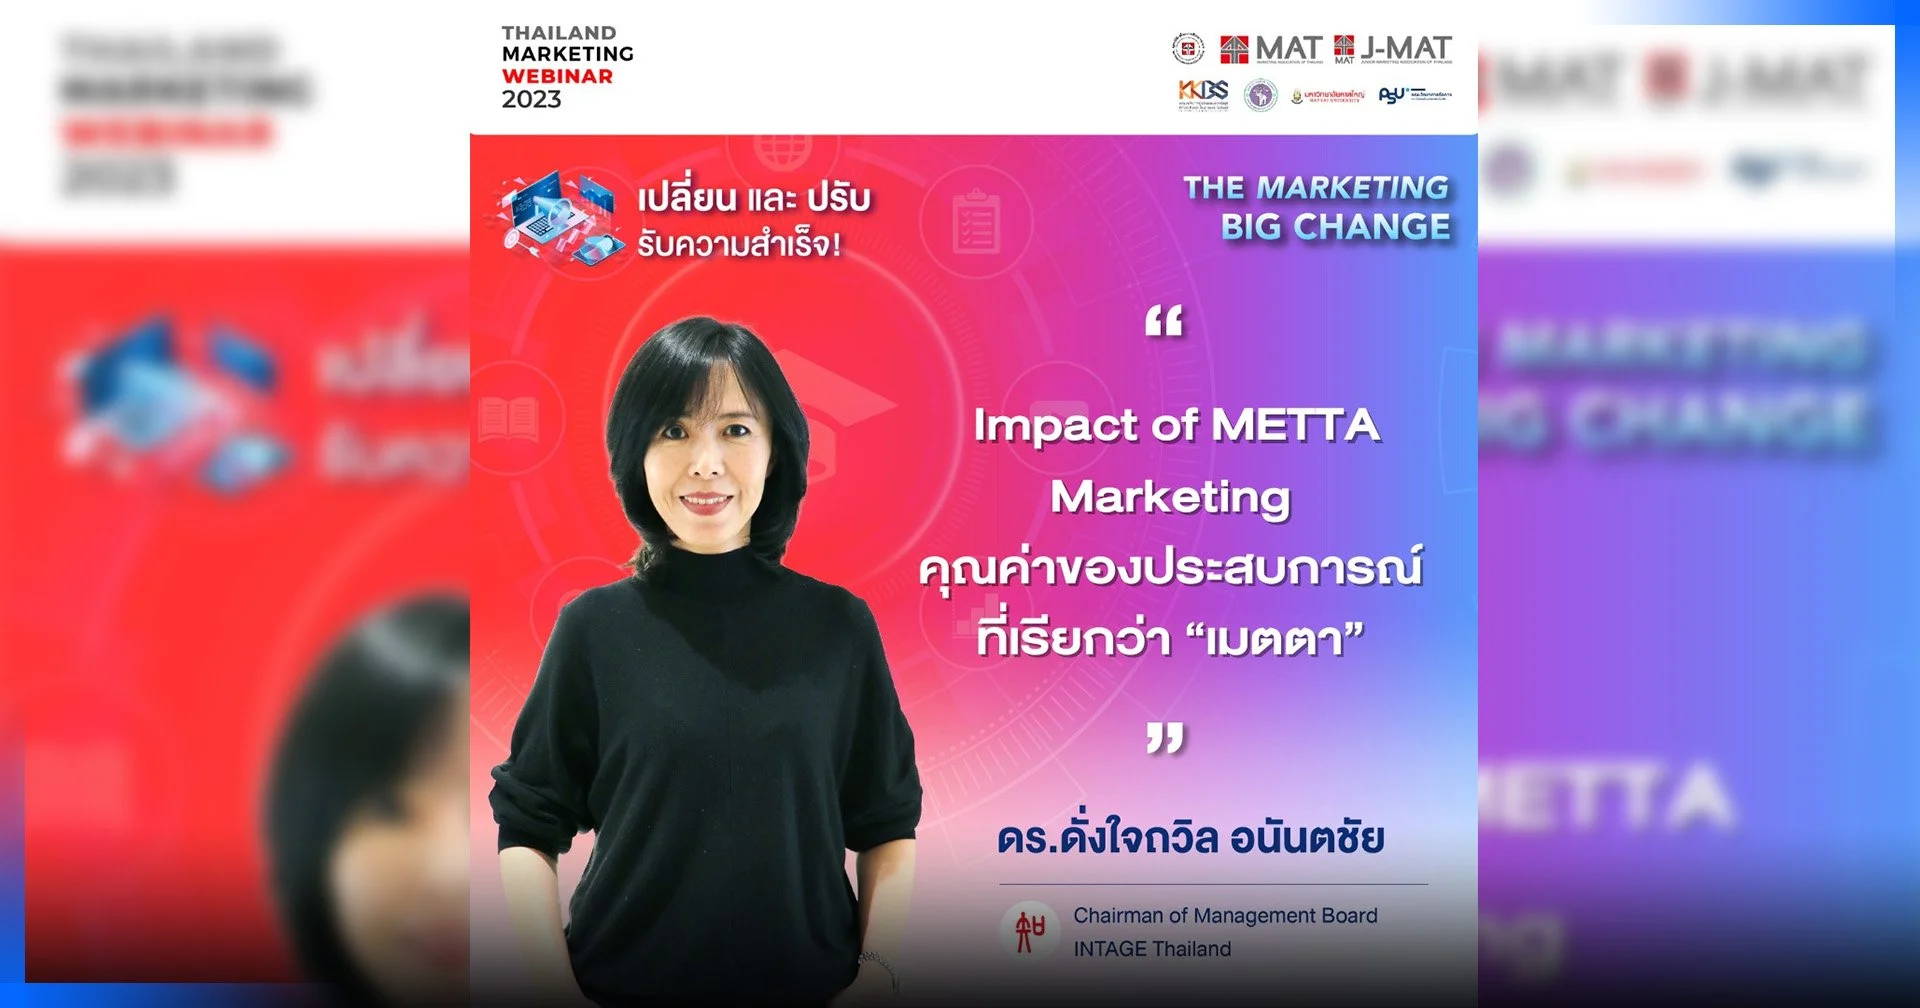 เจาะลึกพฤติกรรมผู้บริโภคใหม่ ได้ใจยุคดิจิทัล โดย ดร.ดั่งใจถวิล อนันตชัย จากงาน Thailand Marketing Webinar 2023